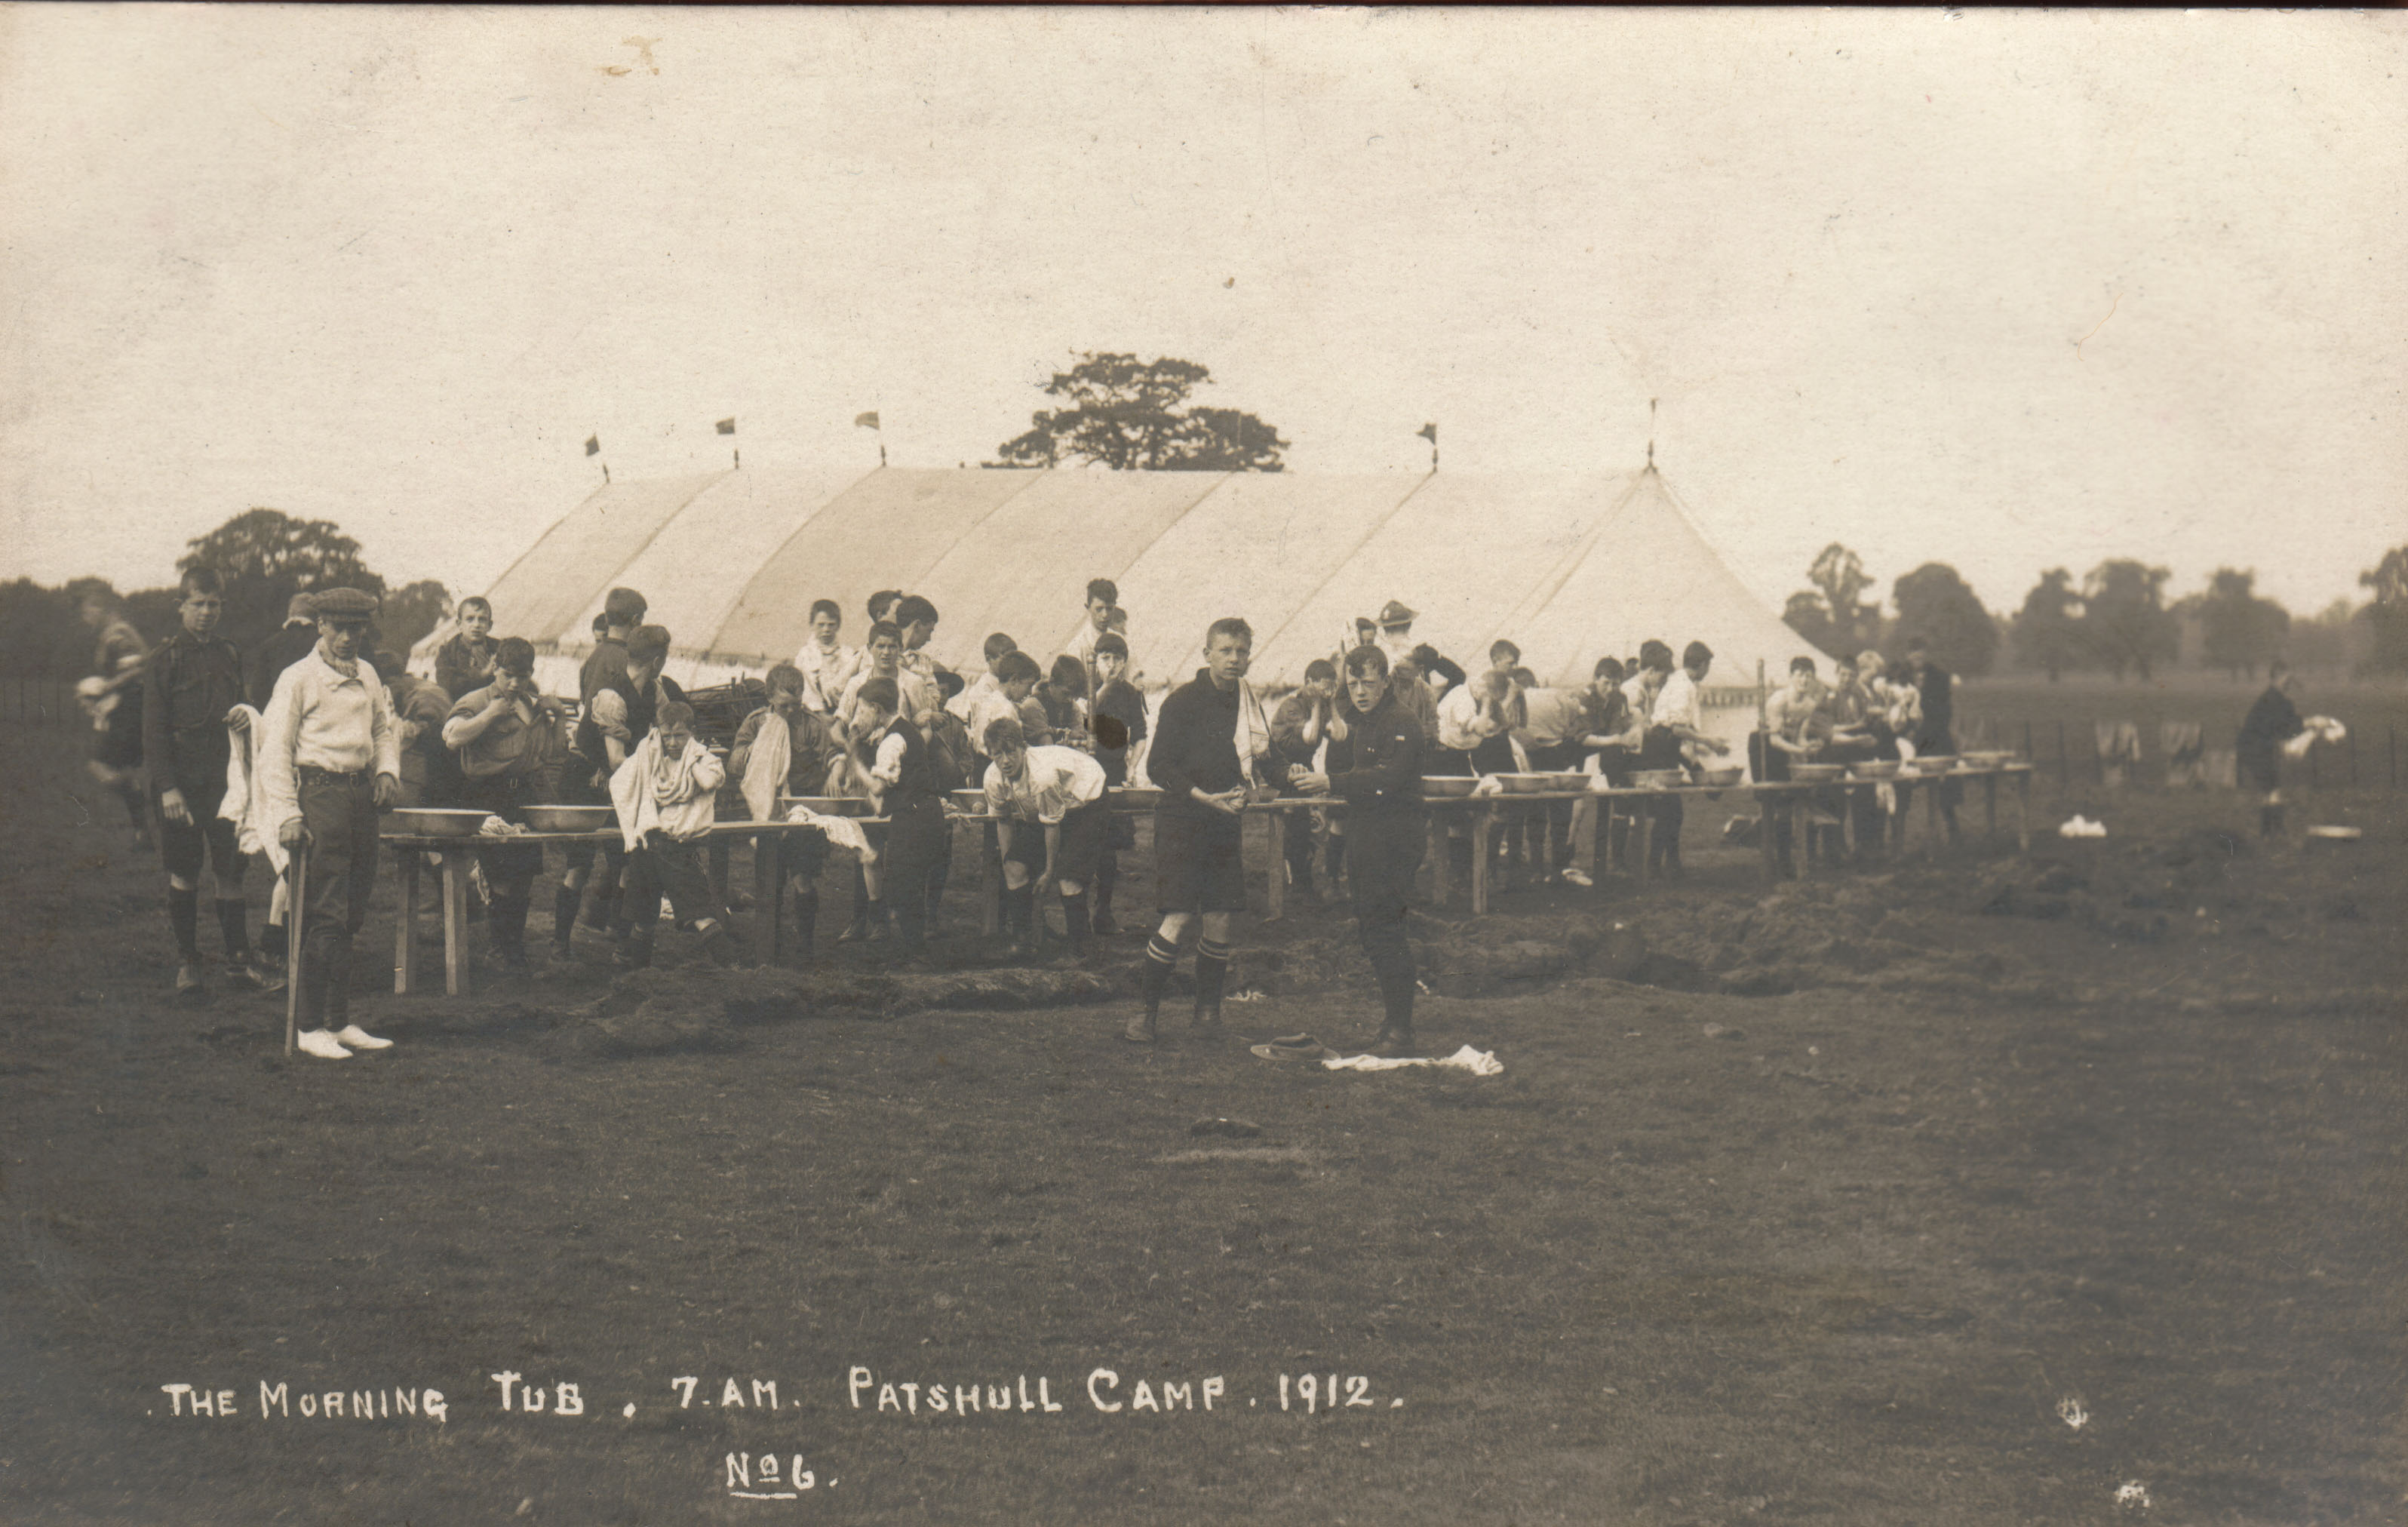 No 6 PATSHULL CAMPSITE (1912)